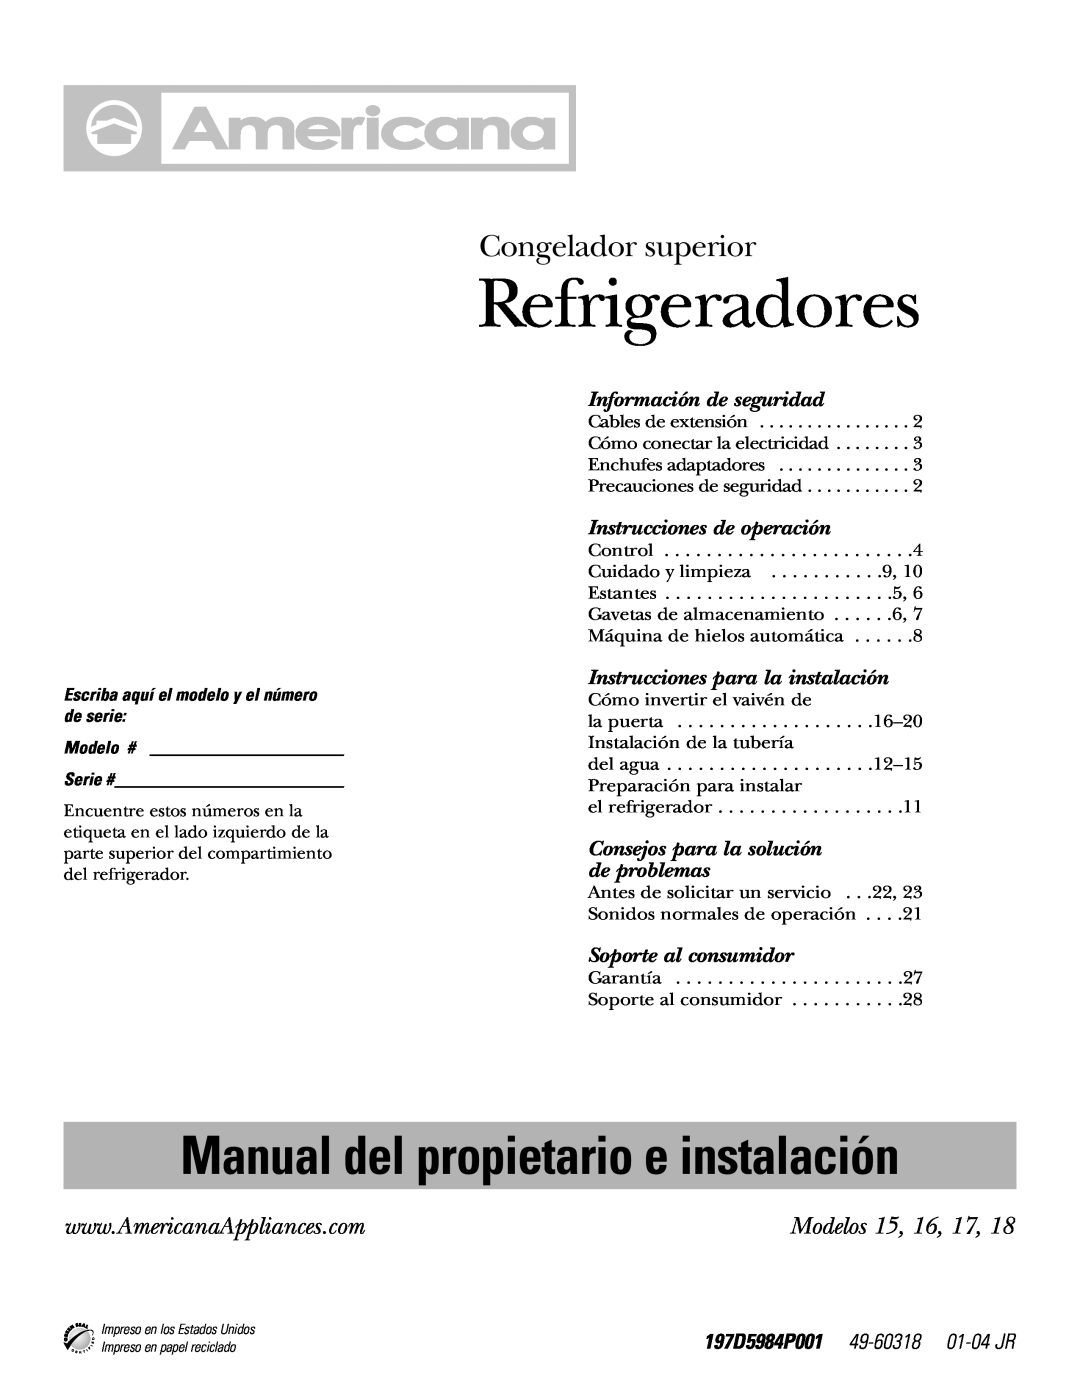 Americana Appliances Refrigeradores, Congelador superior, Modelos 15, 16, 17, Manual del propietario e instalación 